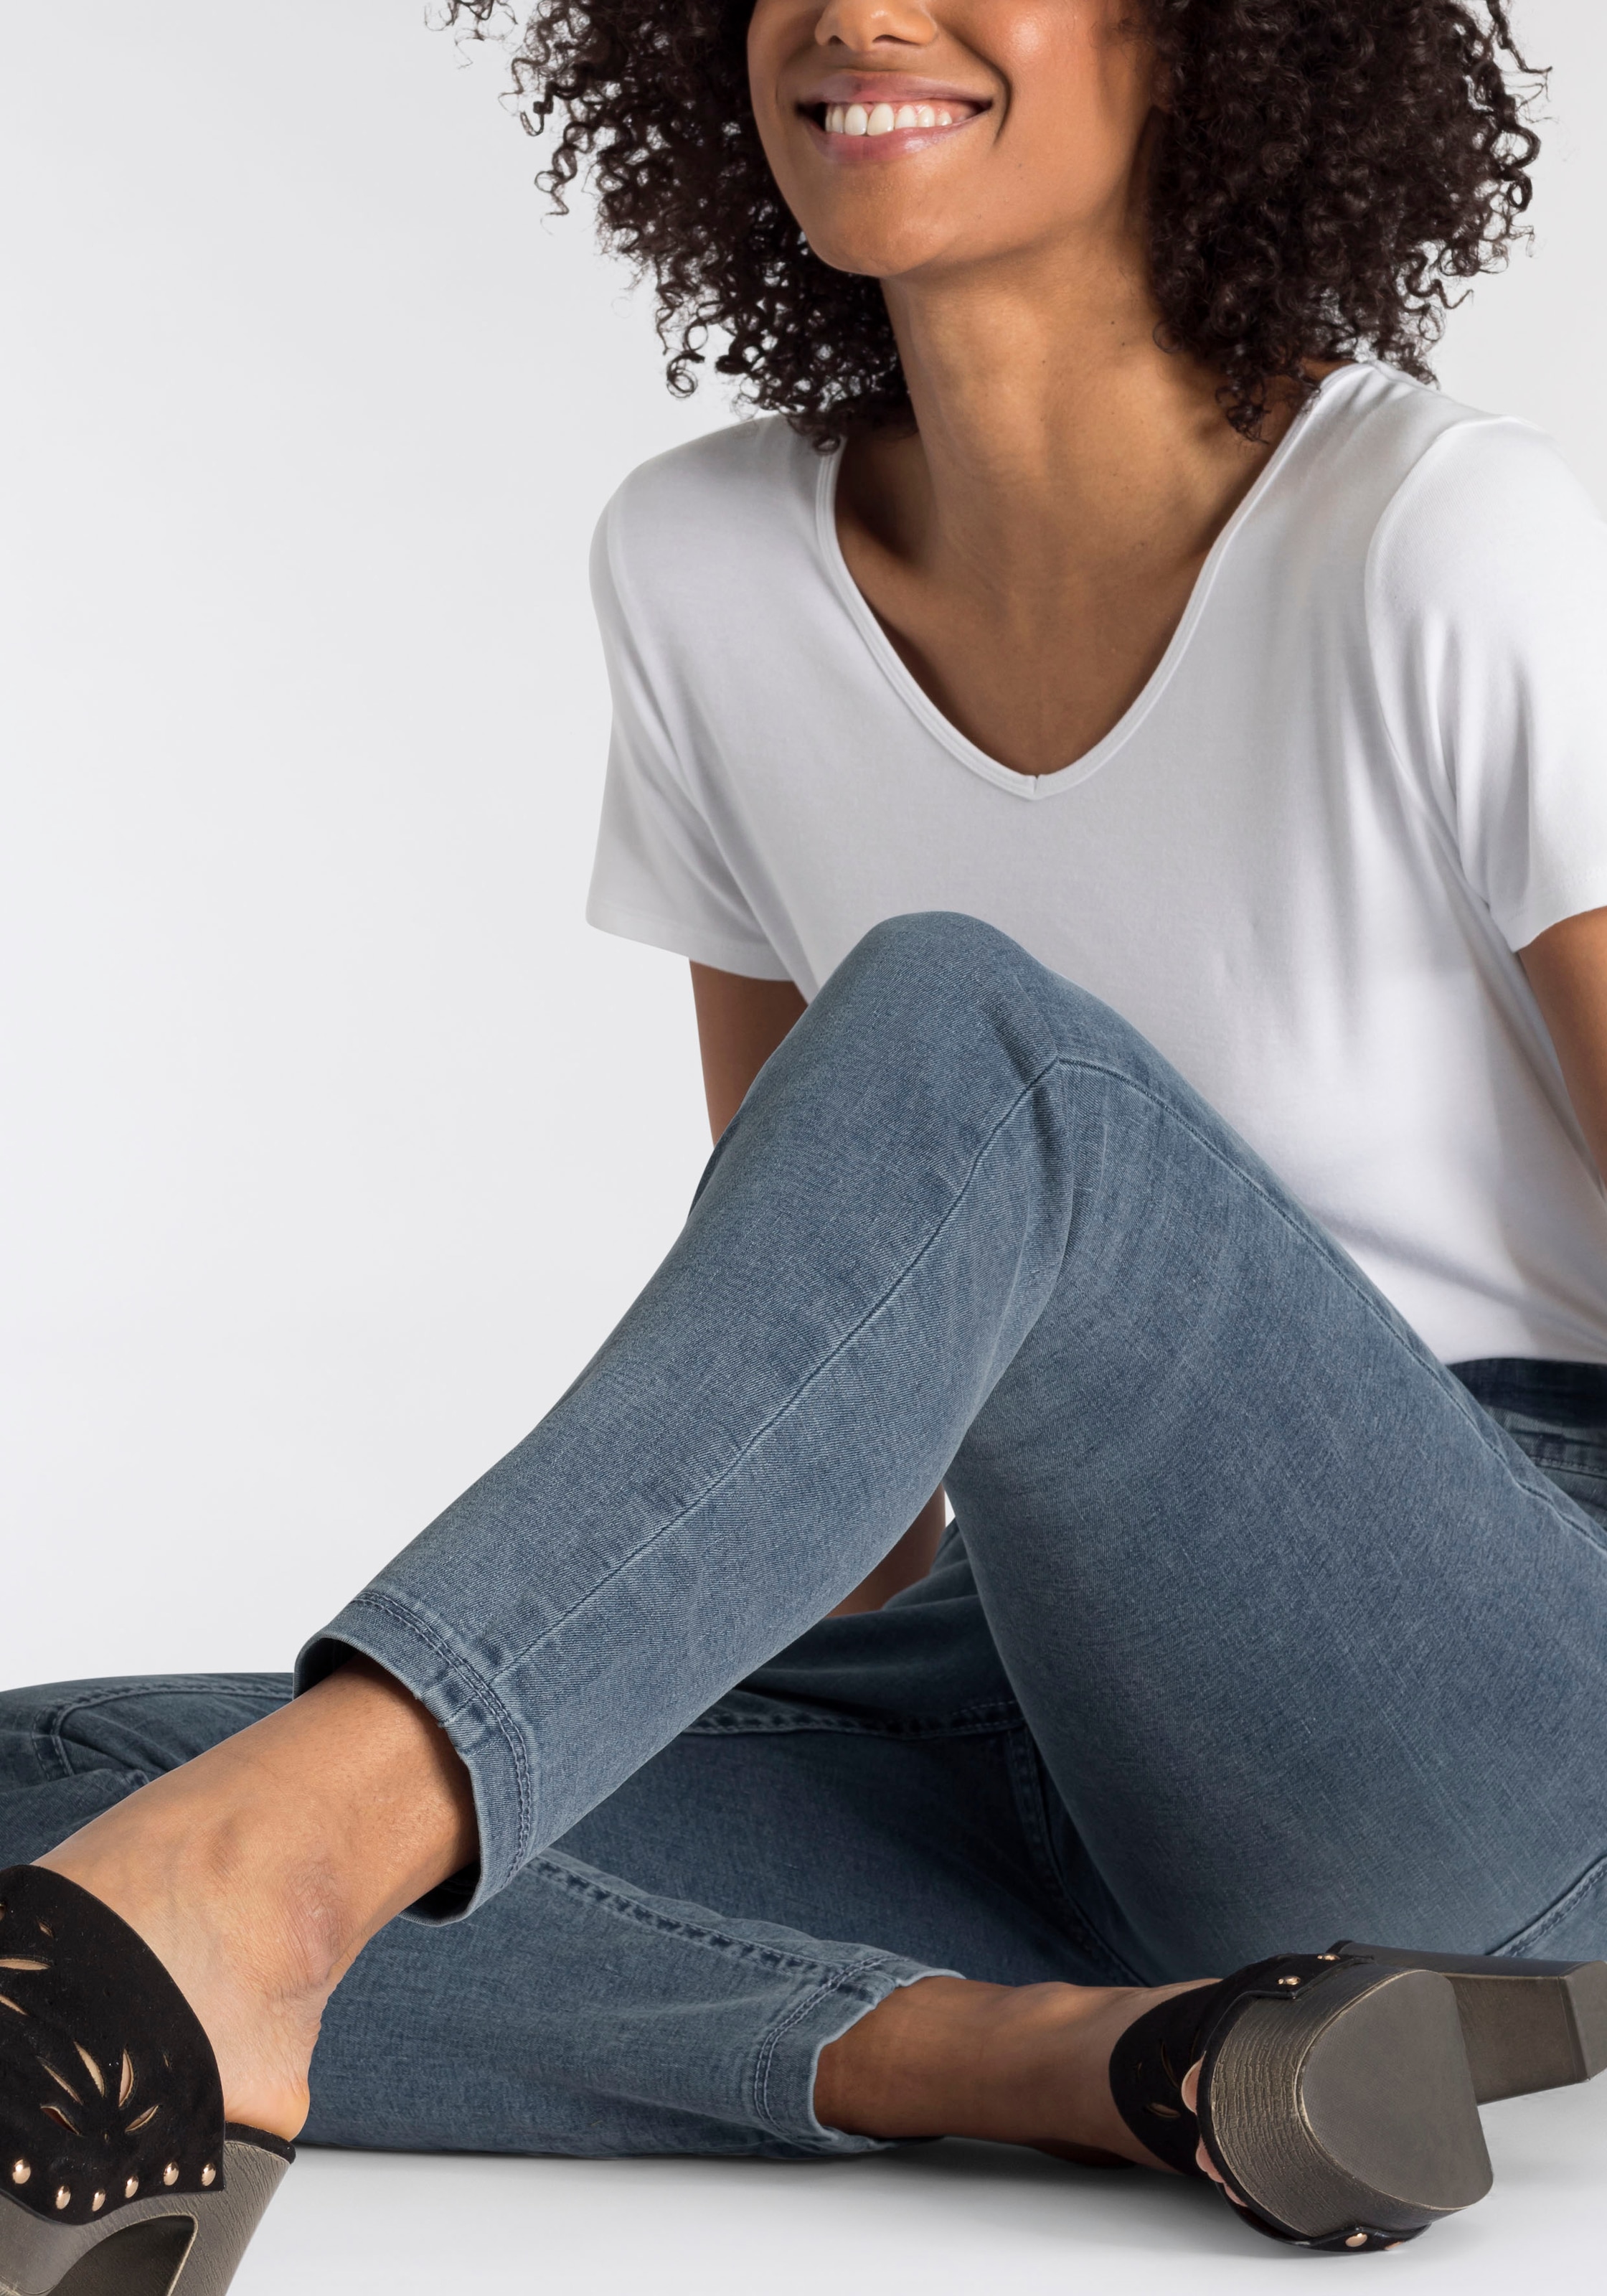 MAC Skinny-fit-Jeans »Hiperstretch-Skinny«, Power-Stretch Qualität sitzt  den ganzen Tag bequem online kaufen | Stretchjeans